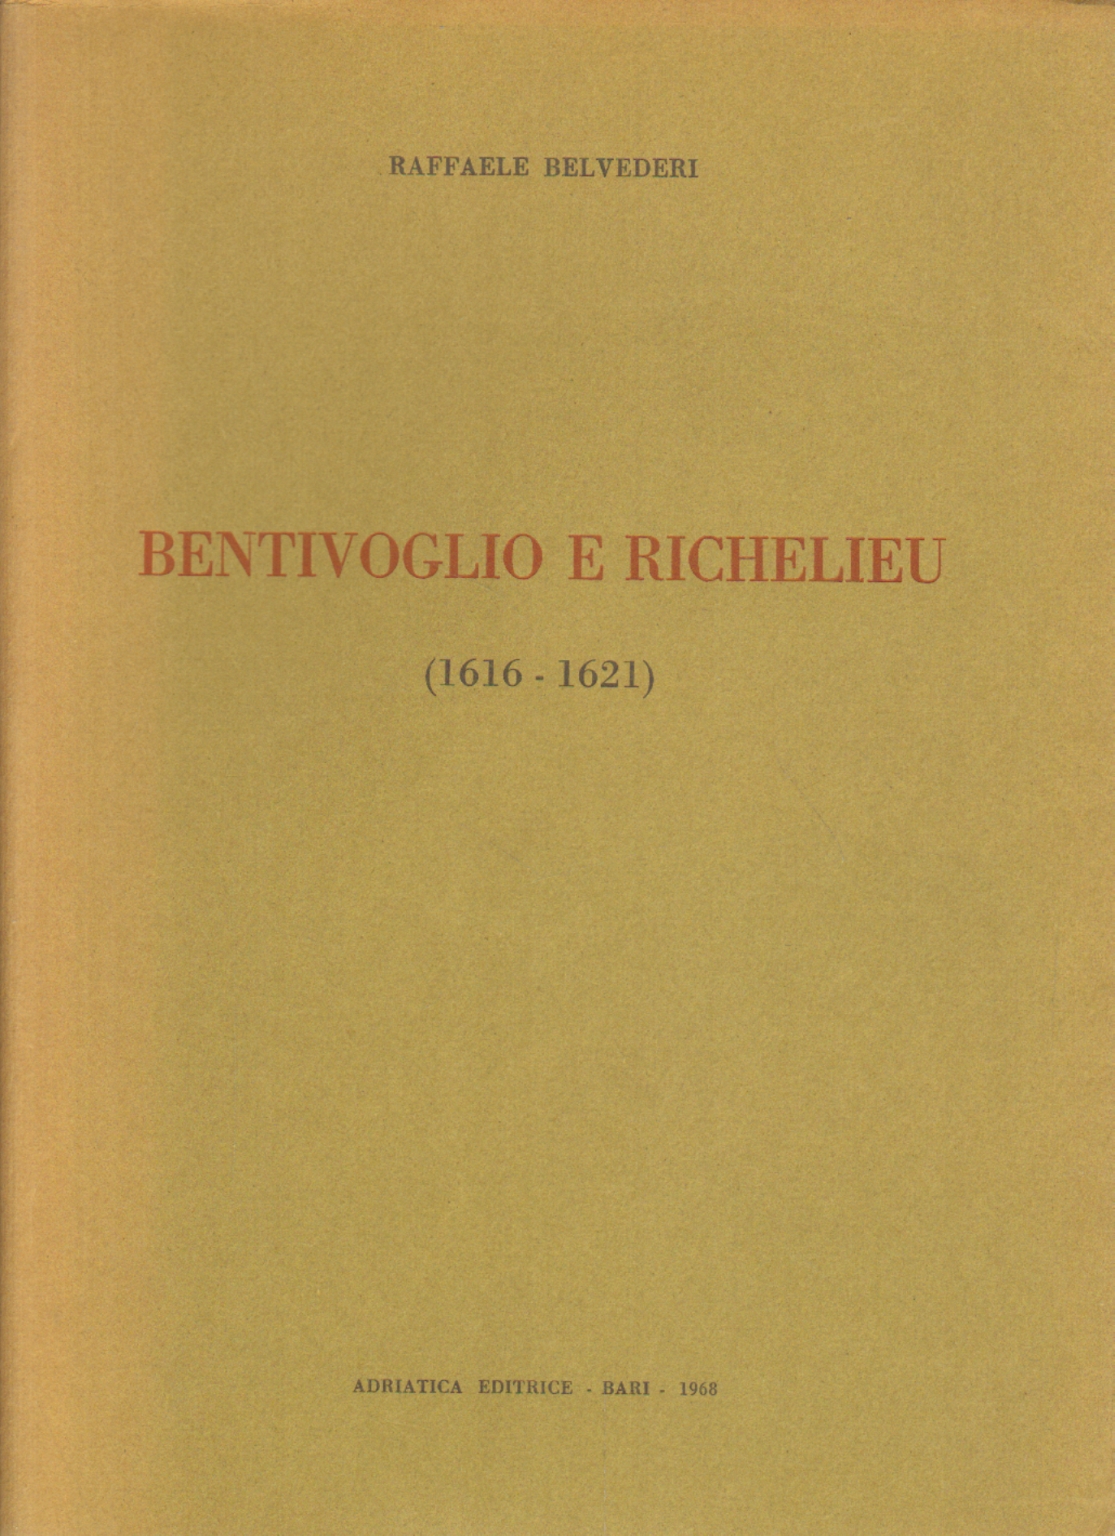 Bentivoglio y Richelieu